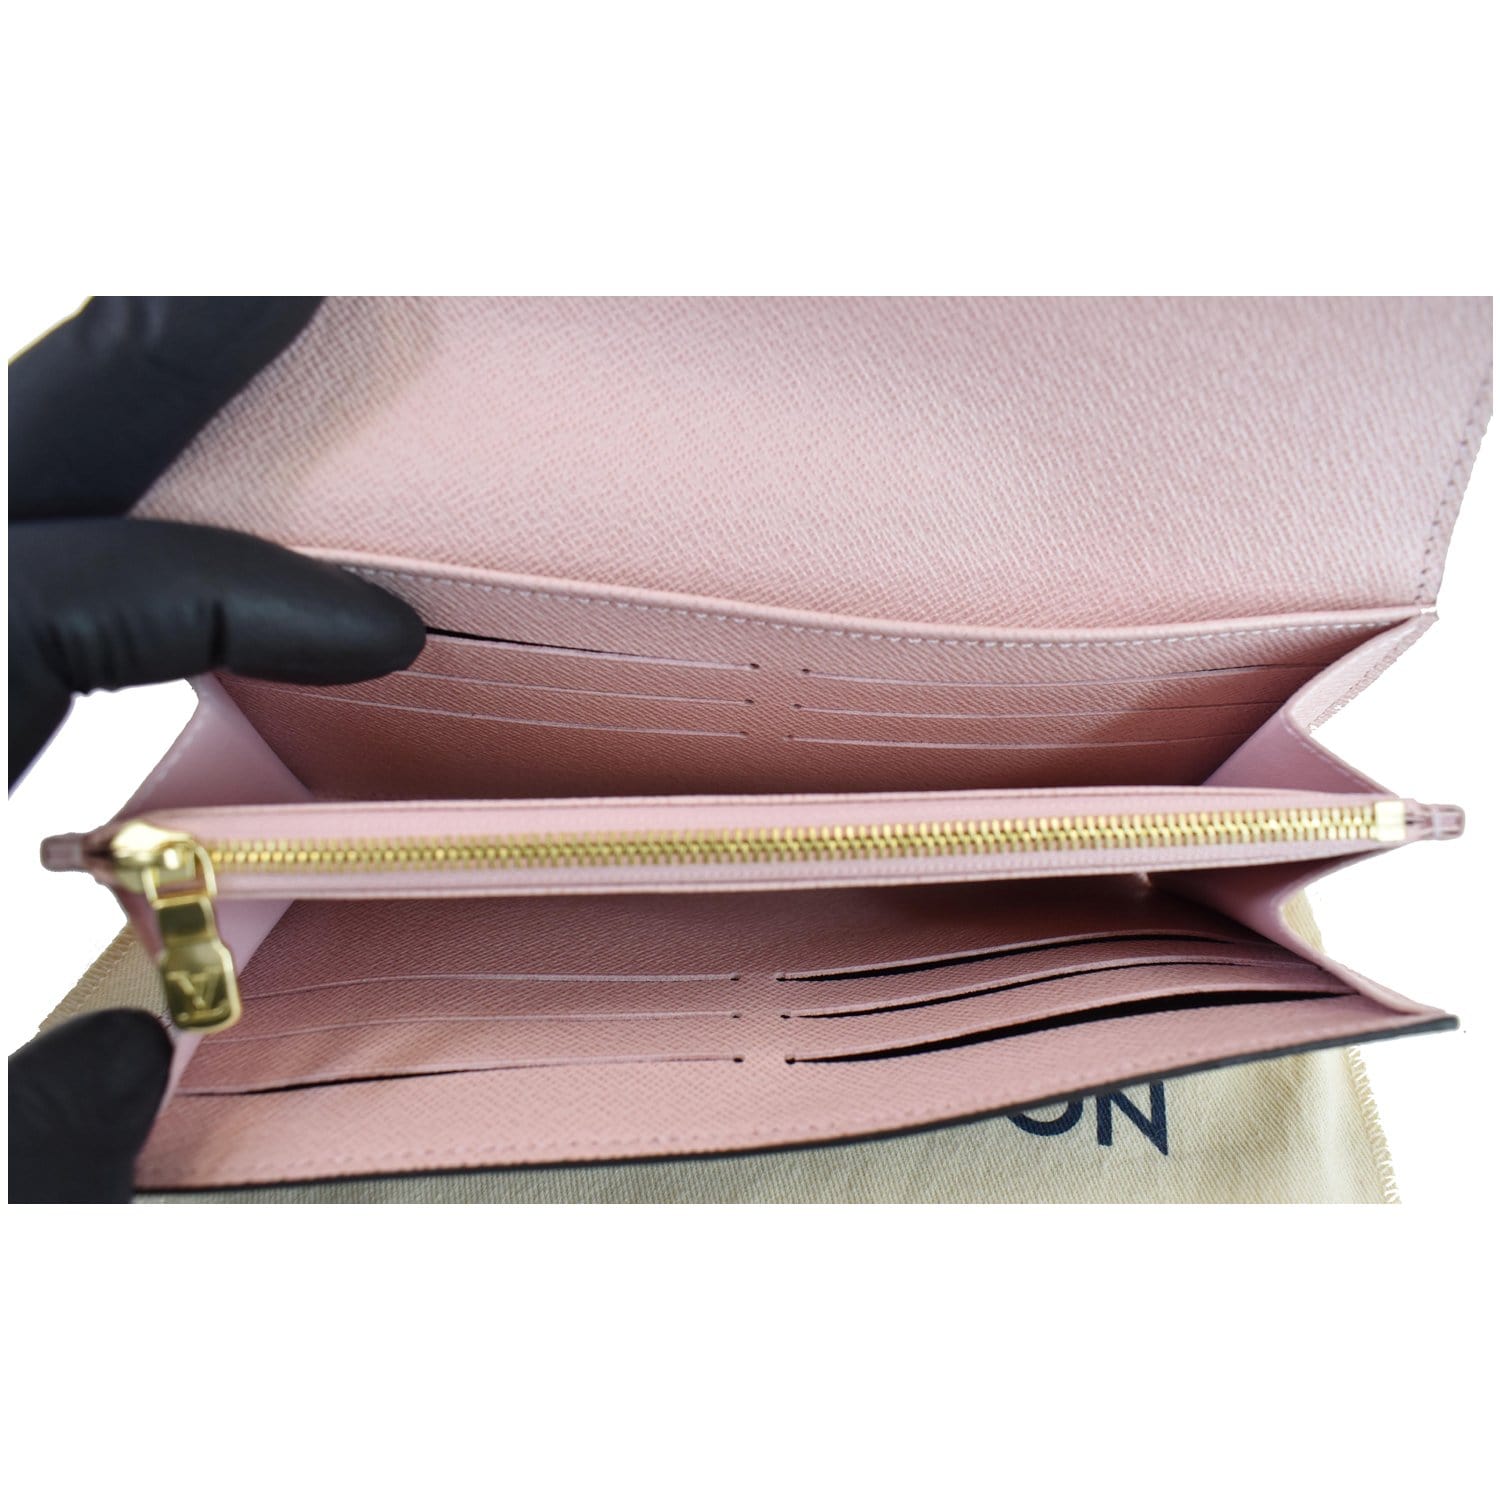 Pink Louis Vuitton Wallet Sarah Wallet NM Rose Ballerine Gold 